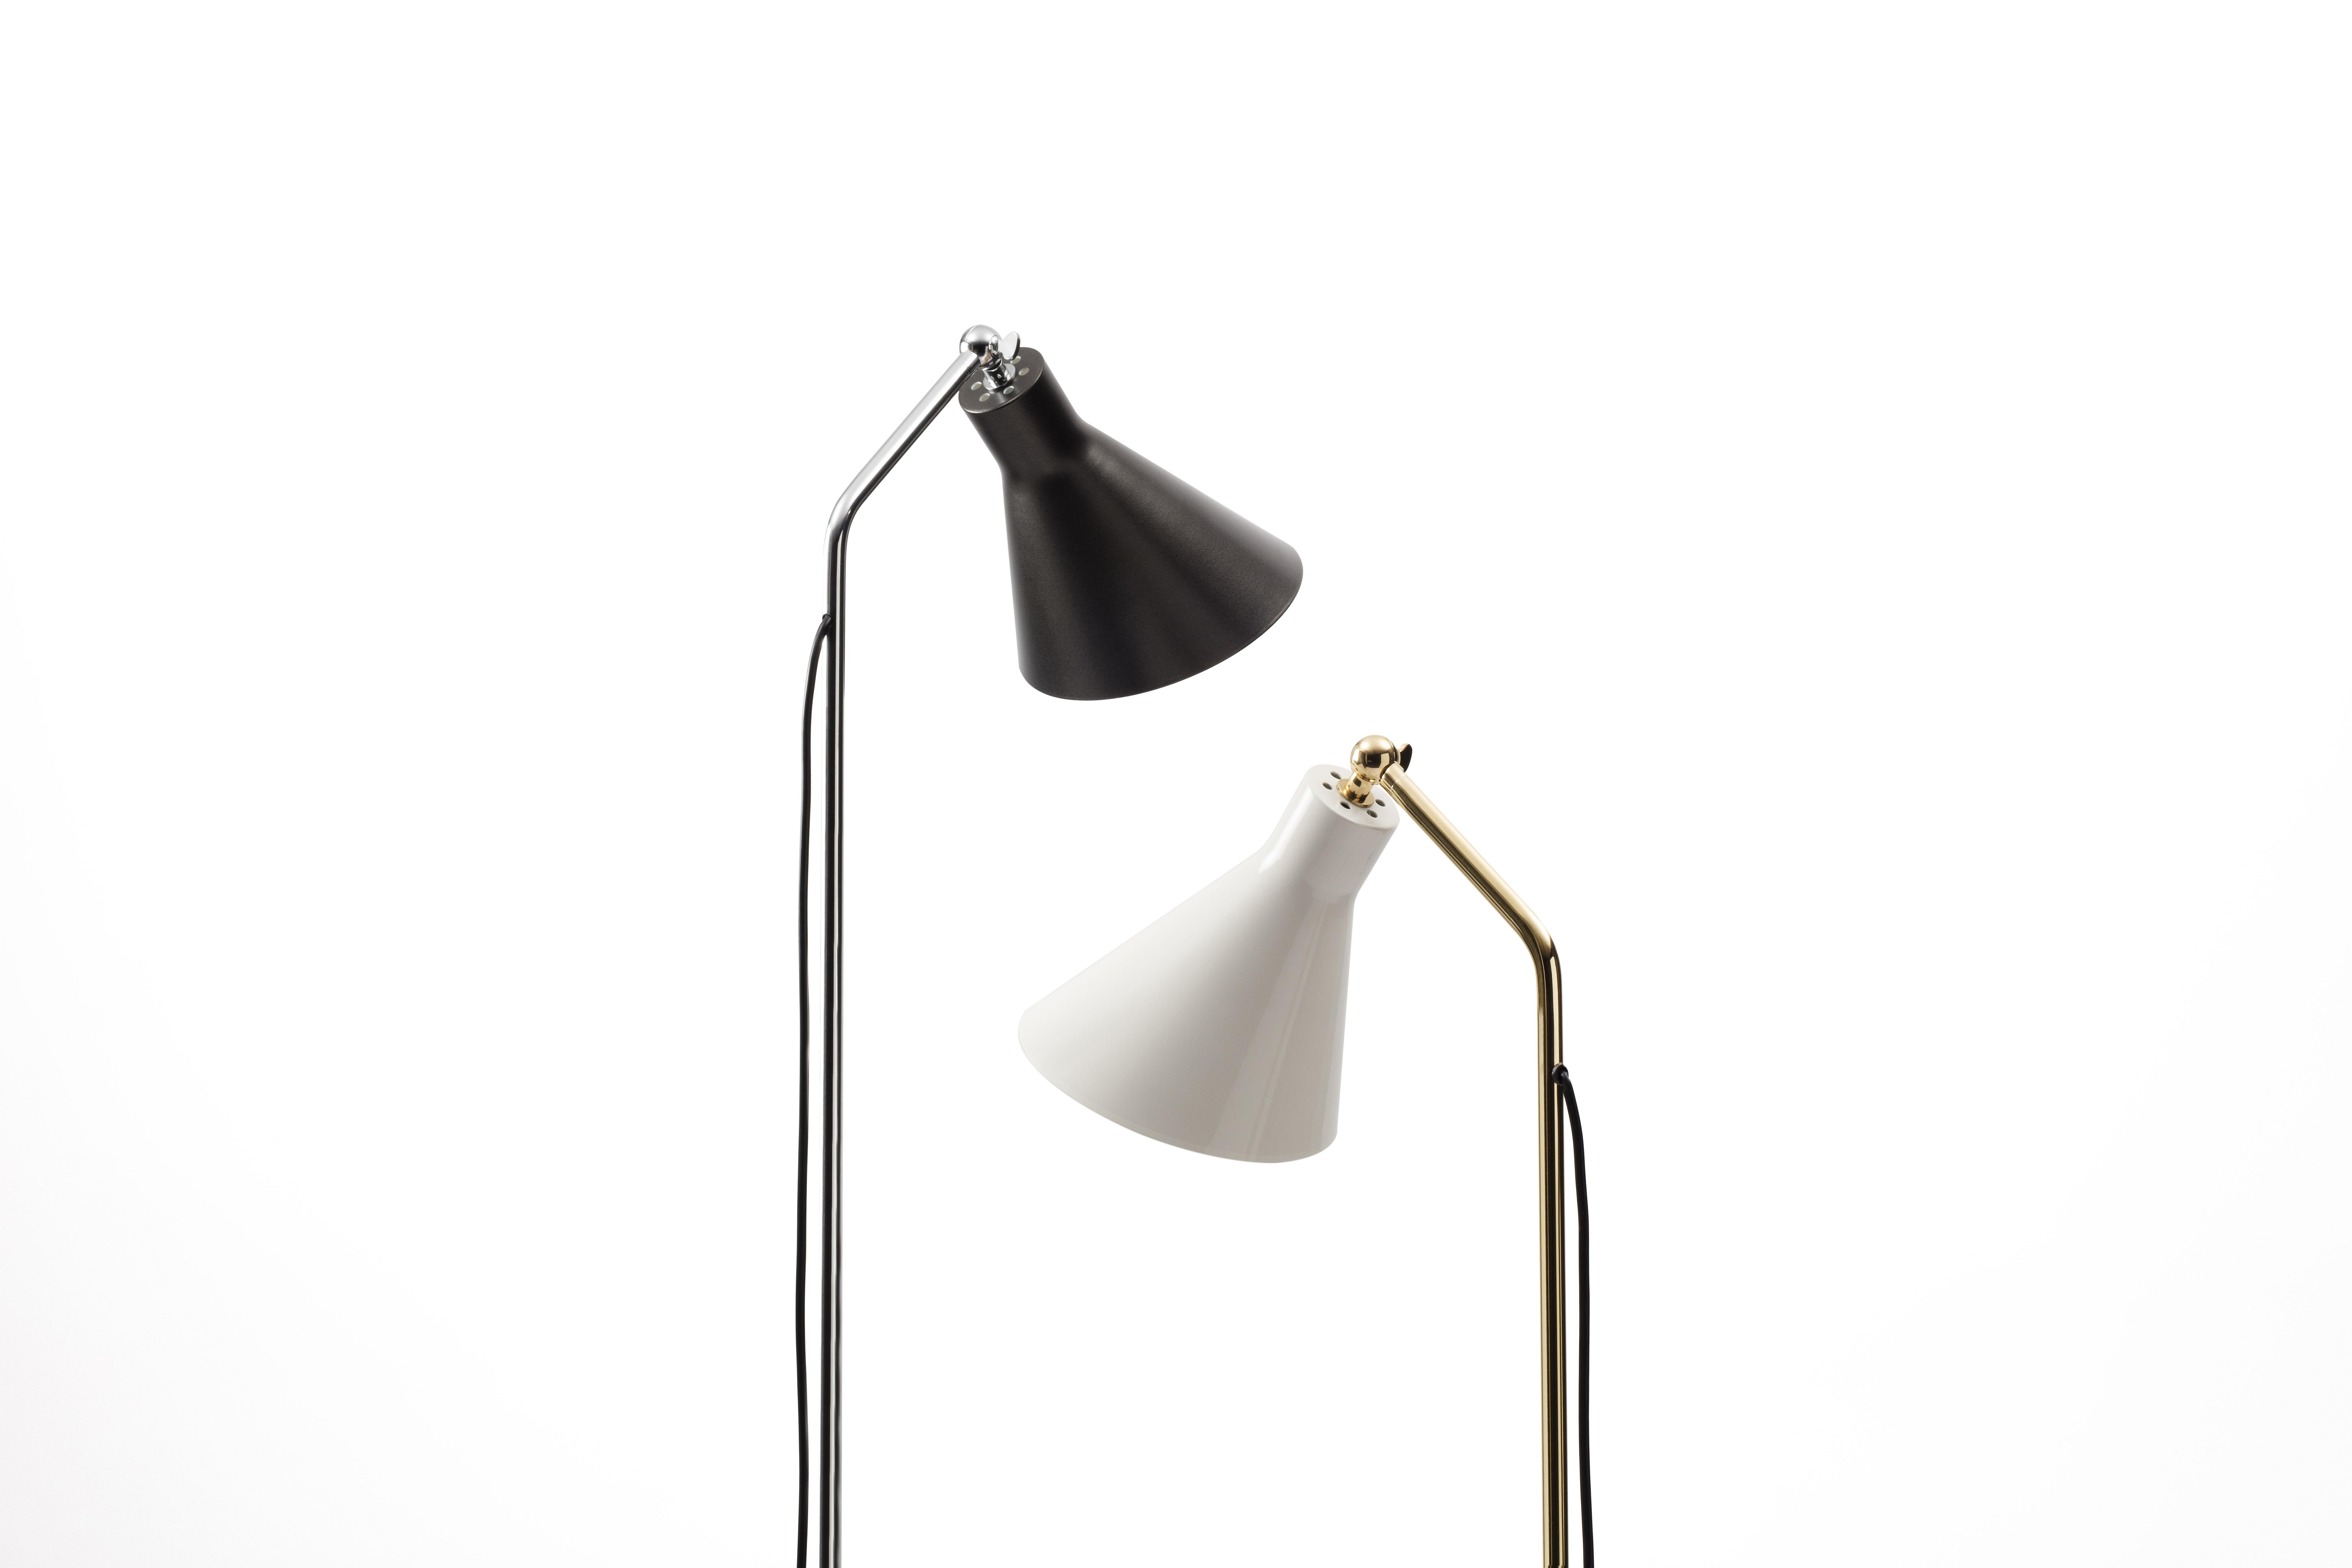 Ignazio Gardella Alzabile Floor Lamp in Brass and Black Marble for Tato Italia For Sale 5